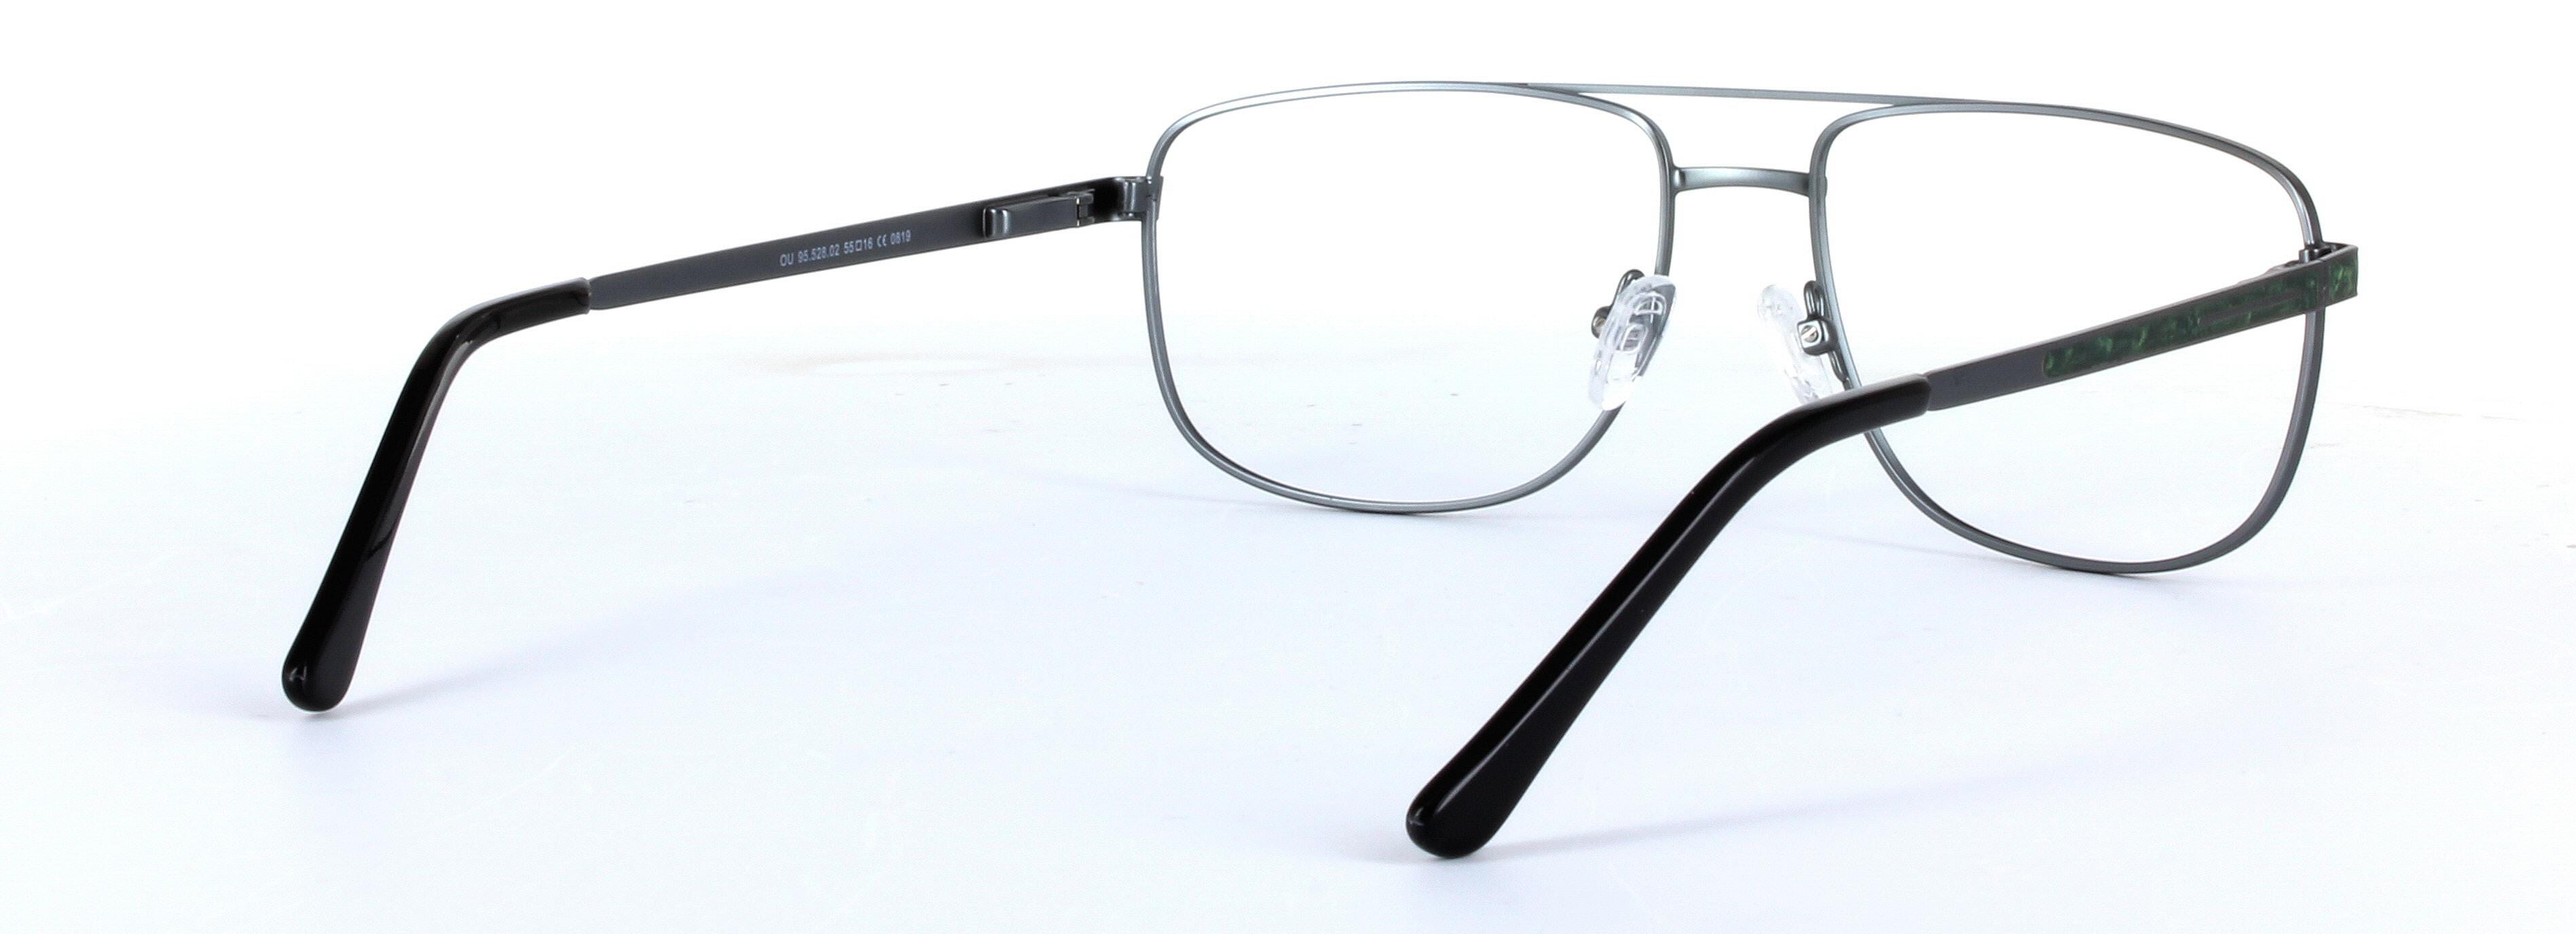 Marlowe Gunmetal Full Rim Oval Metal Glasses - Image View 4